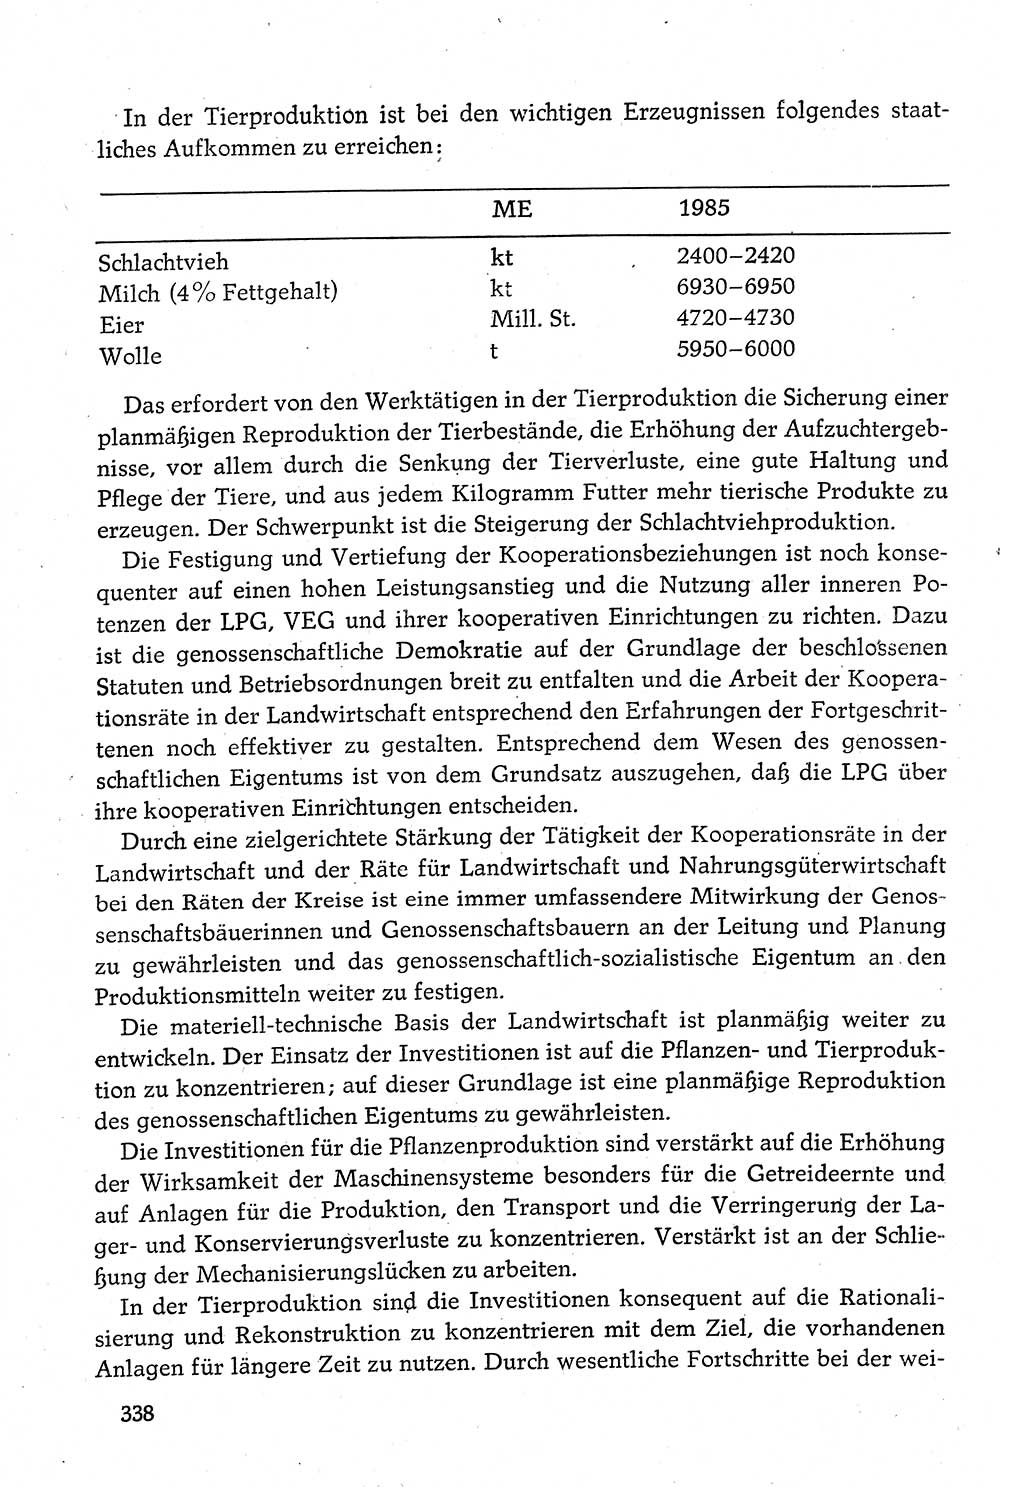 Dokumente der Sozialistischen Einheitspartei Deutschlands (SED) [Deutsche Demokratische Republik (DDR)] 1980-1981, Seite 338 (Dok. SED DDR 1980-1981, S. 338)